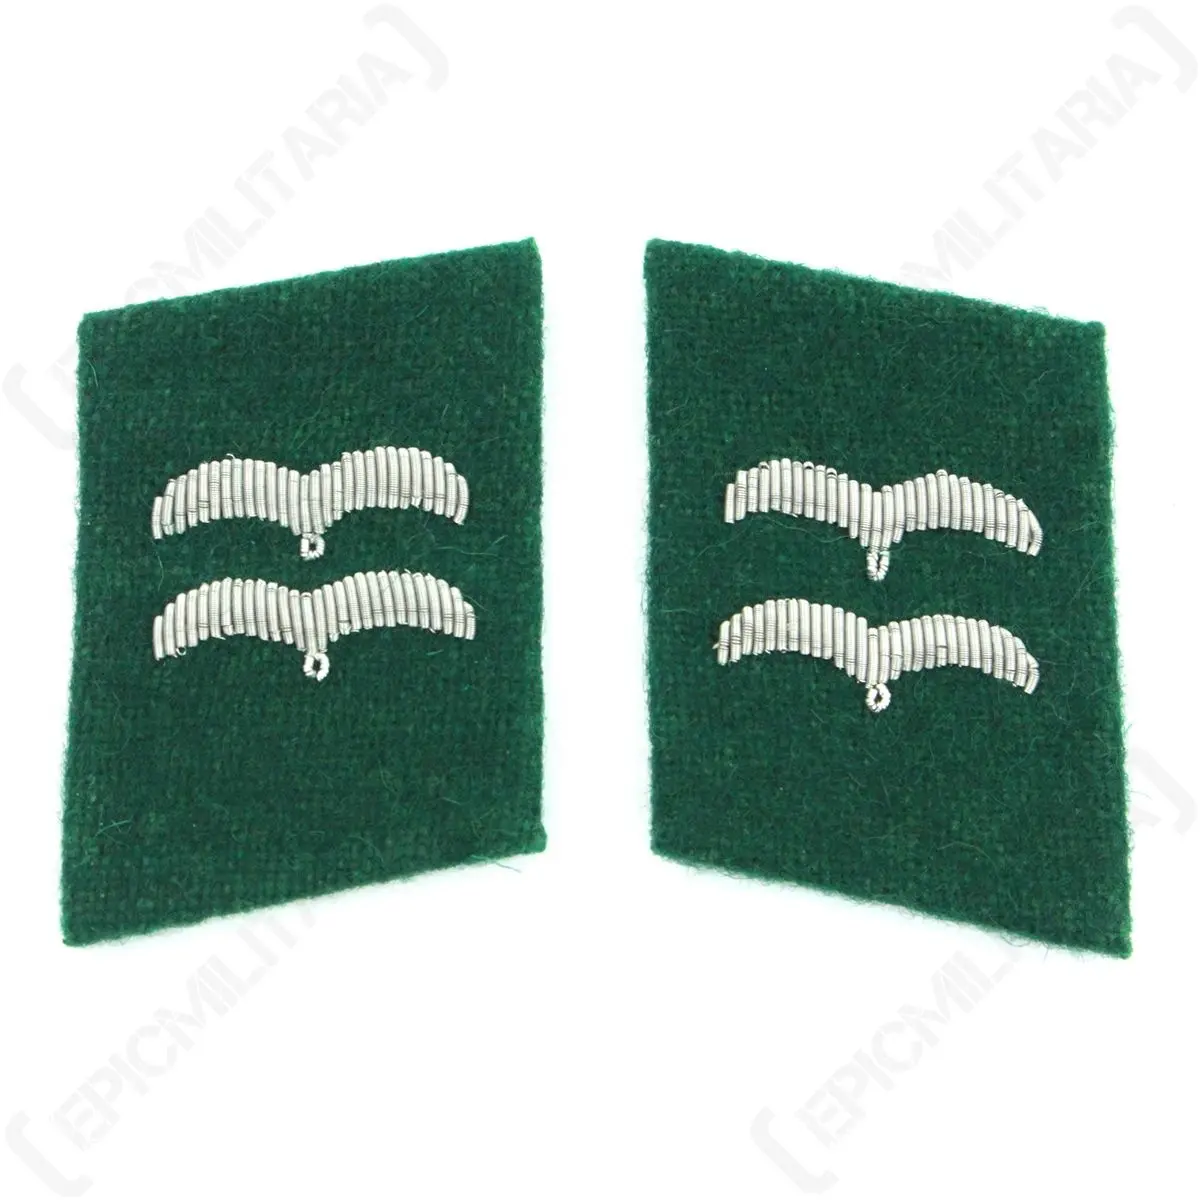 Acessórios de uniforme de venda quente Colarinho de oficial com aba personalizada cor verde e prata - Acessórios com aba para colarinho